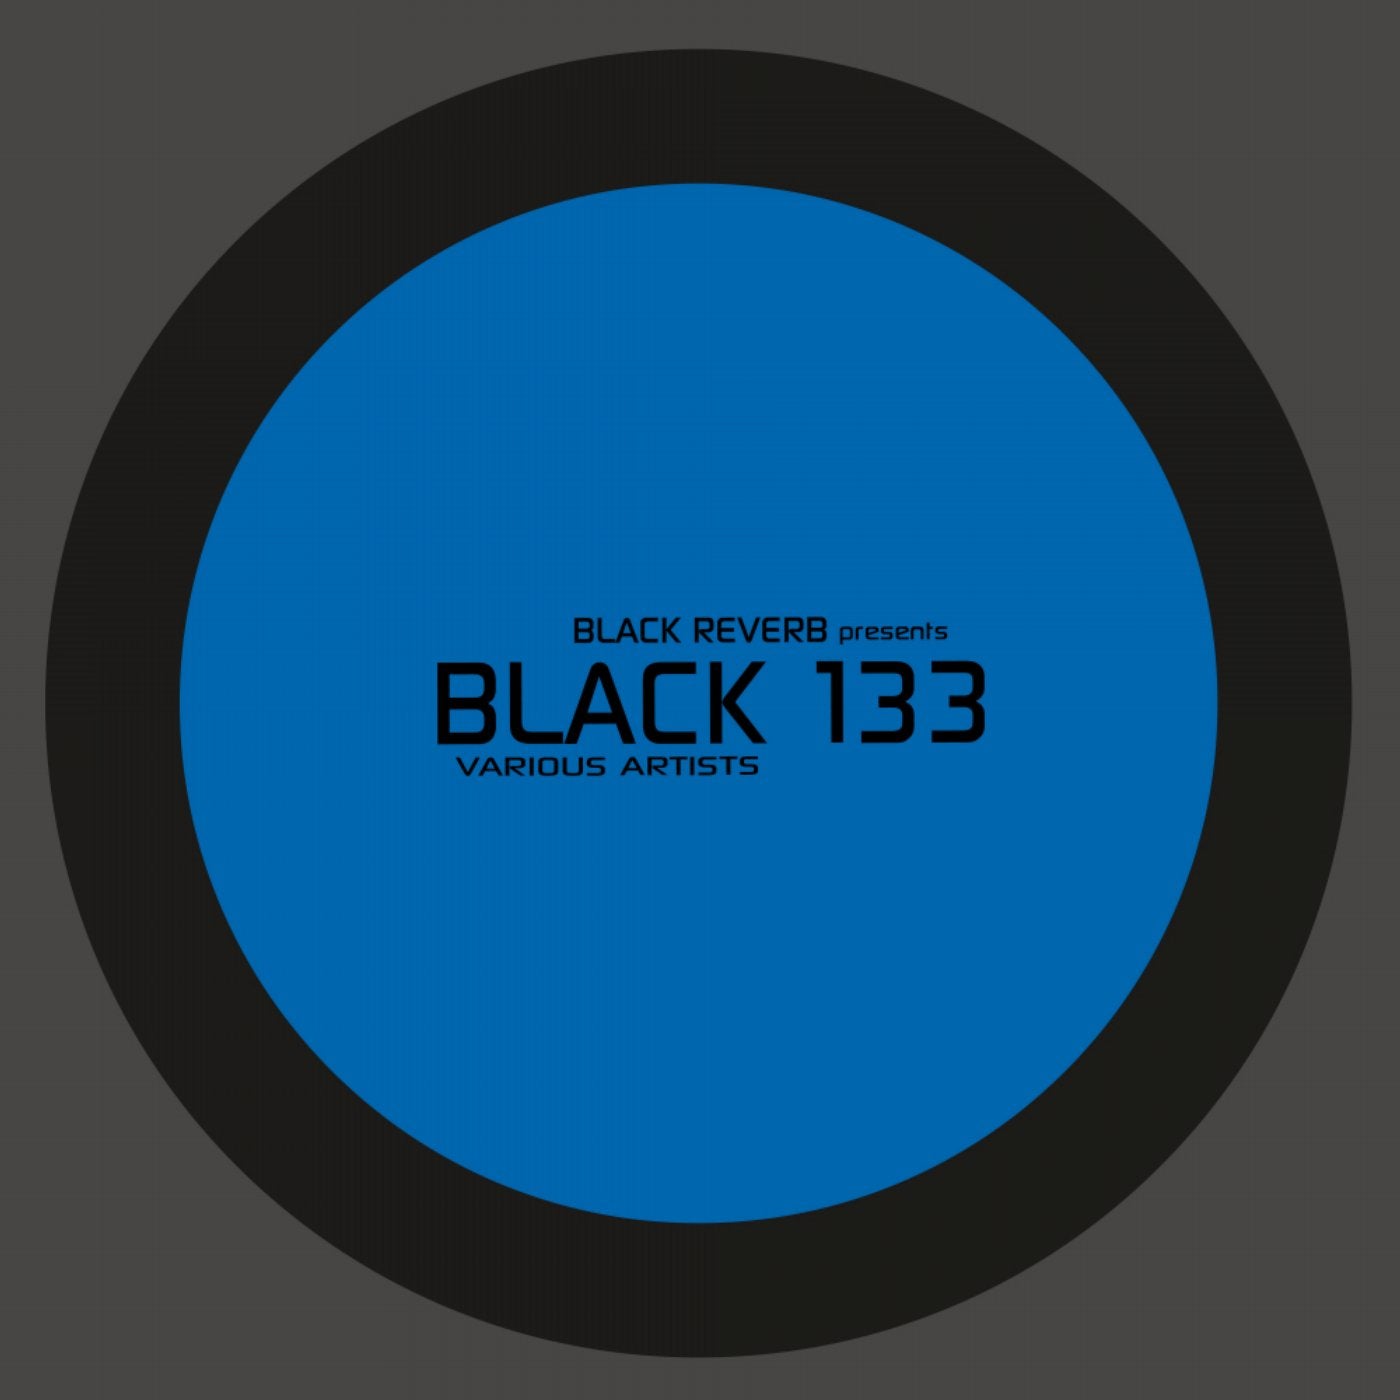 Black 133